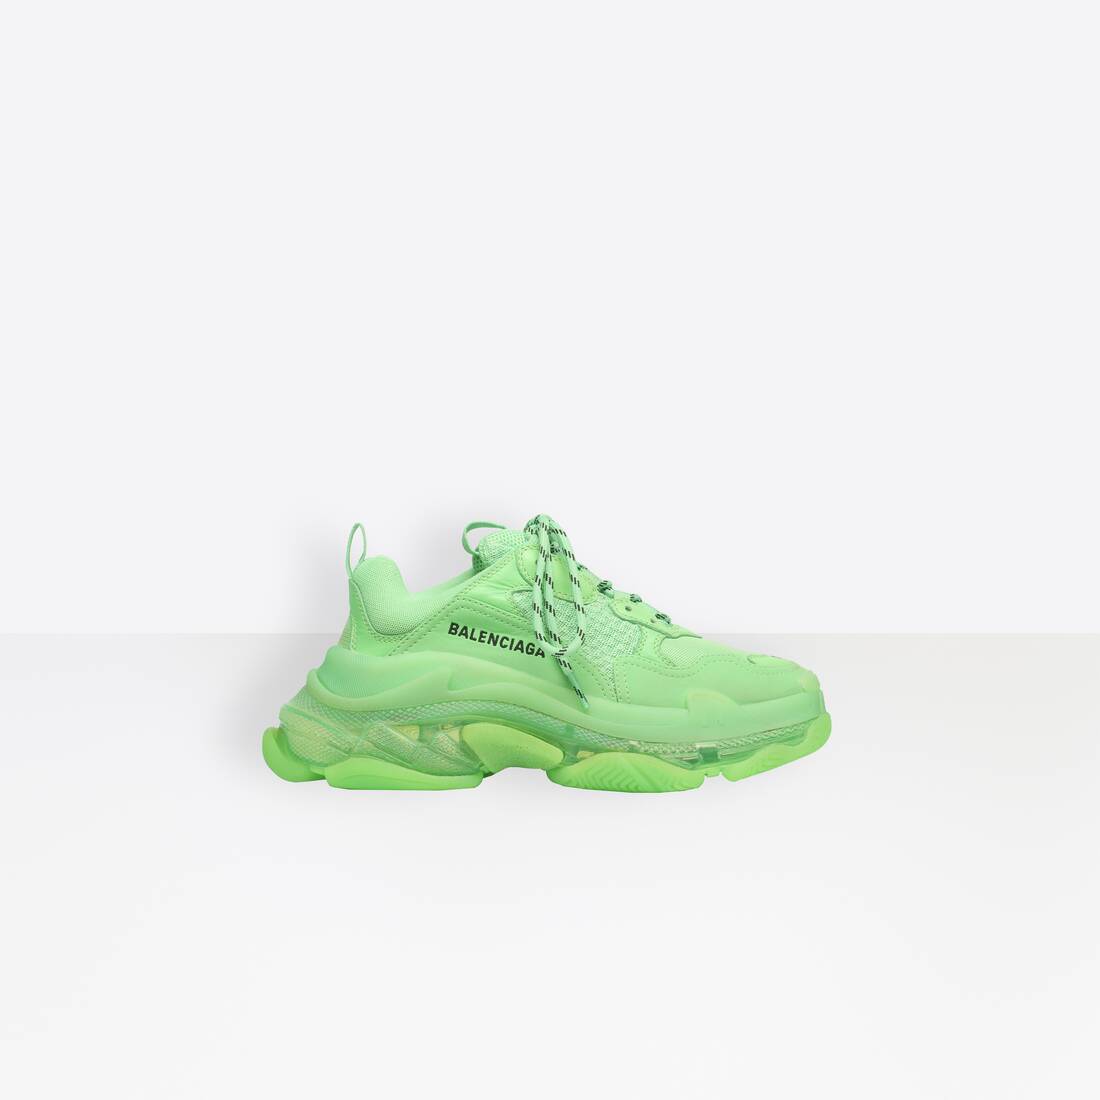 balenciaga scarpe verdi fluo